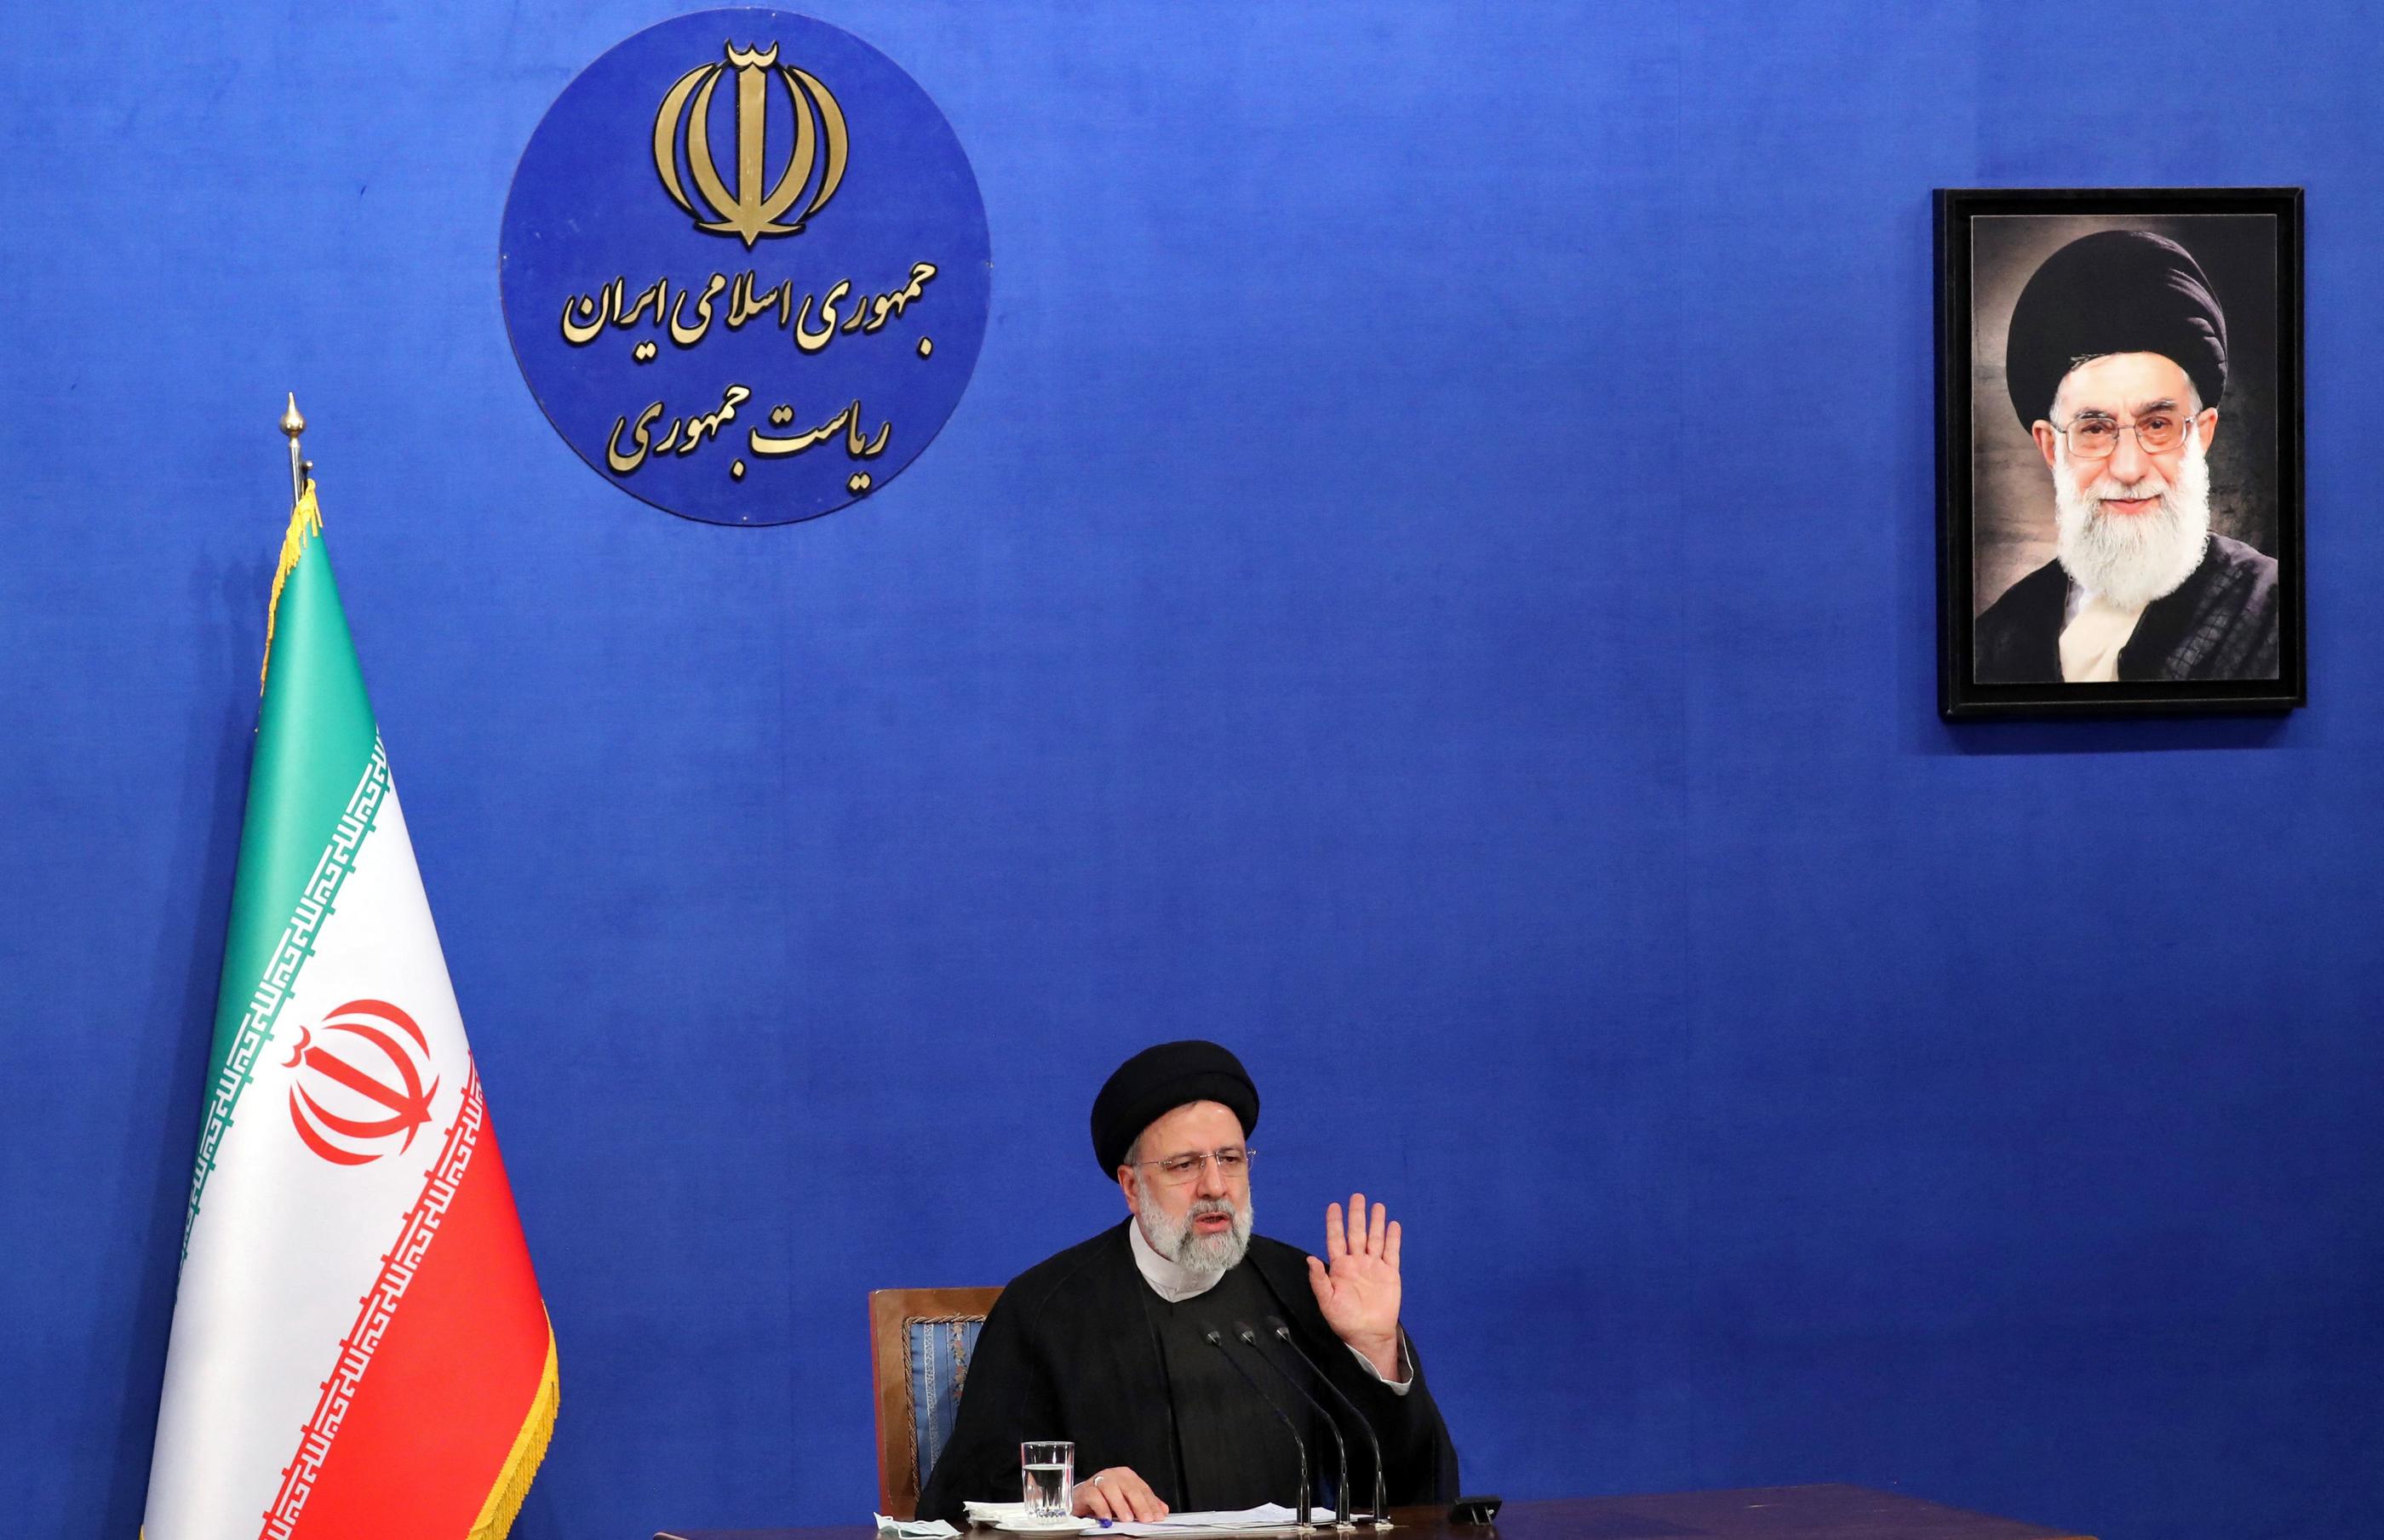 Téhéran, le 29 août 2022. Le président iranien Ebrahim Raïssi s'exprime lors d'une conférence de presse à côté d'un portrait du guide suprême Ali Khamenei. (Illustration) AFP